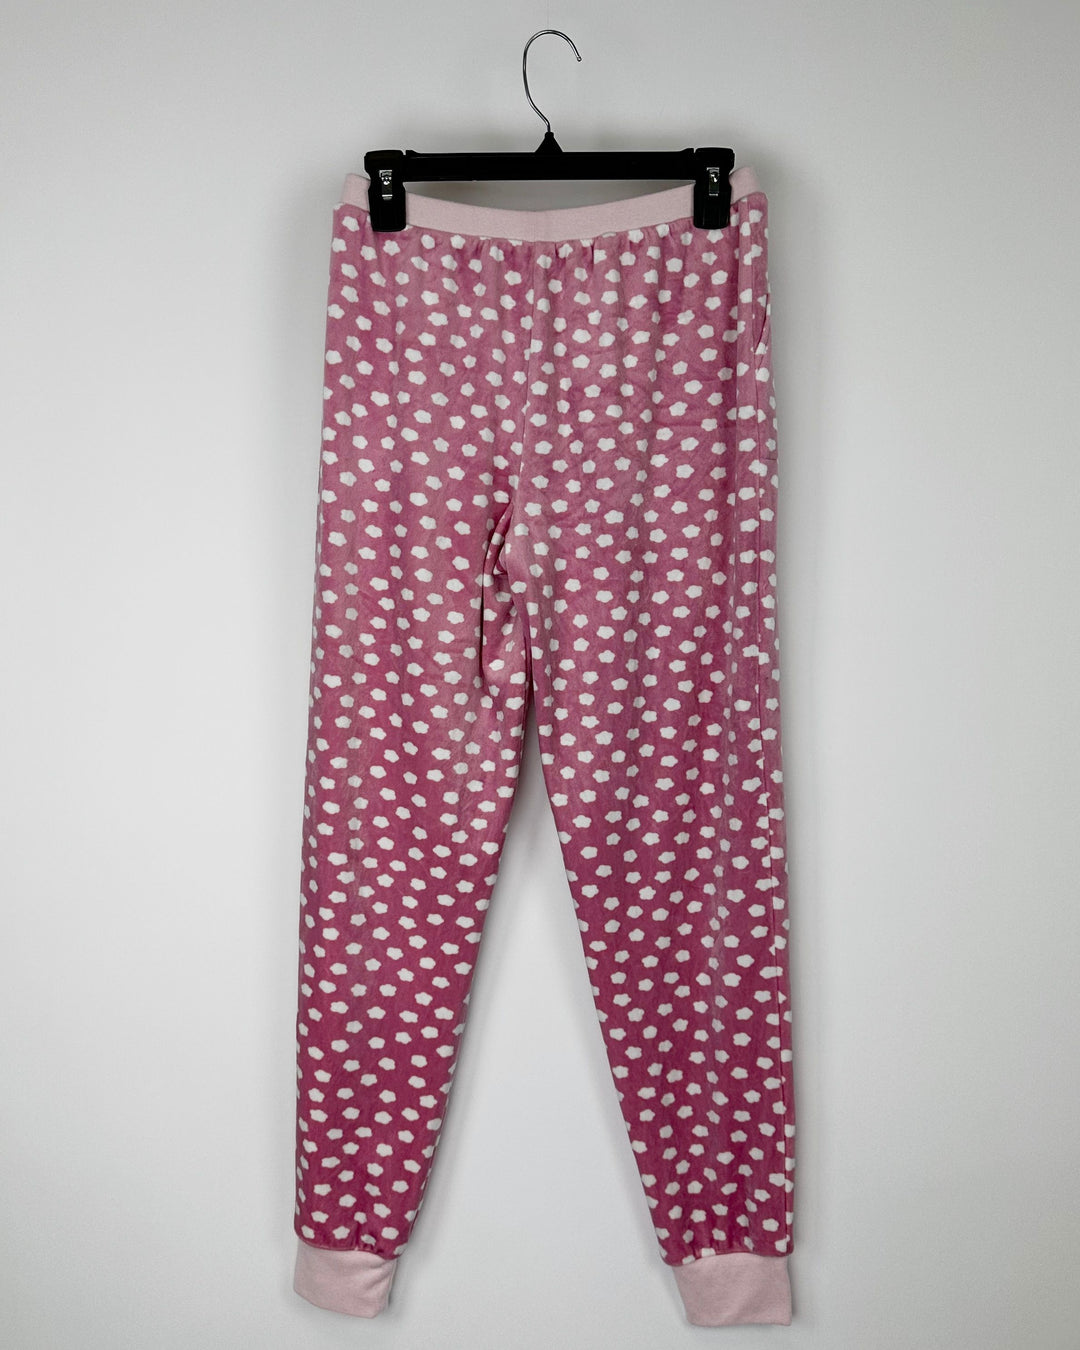 Pink Cloud "Midnight Snacks" Pajama Set - Small